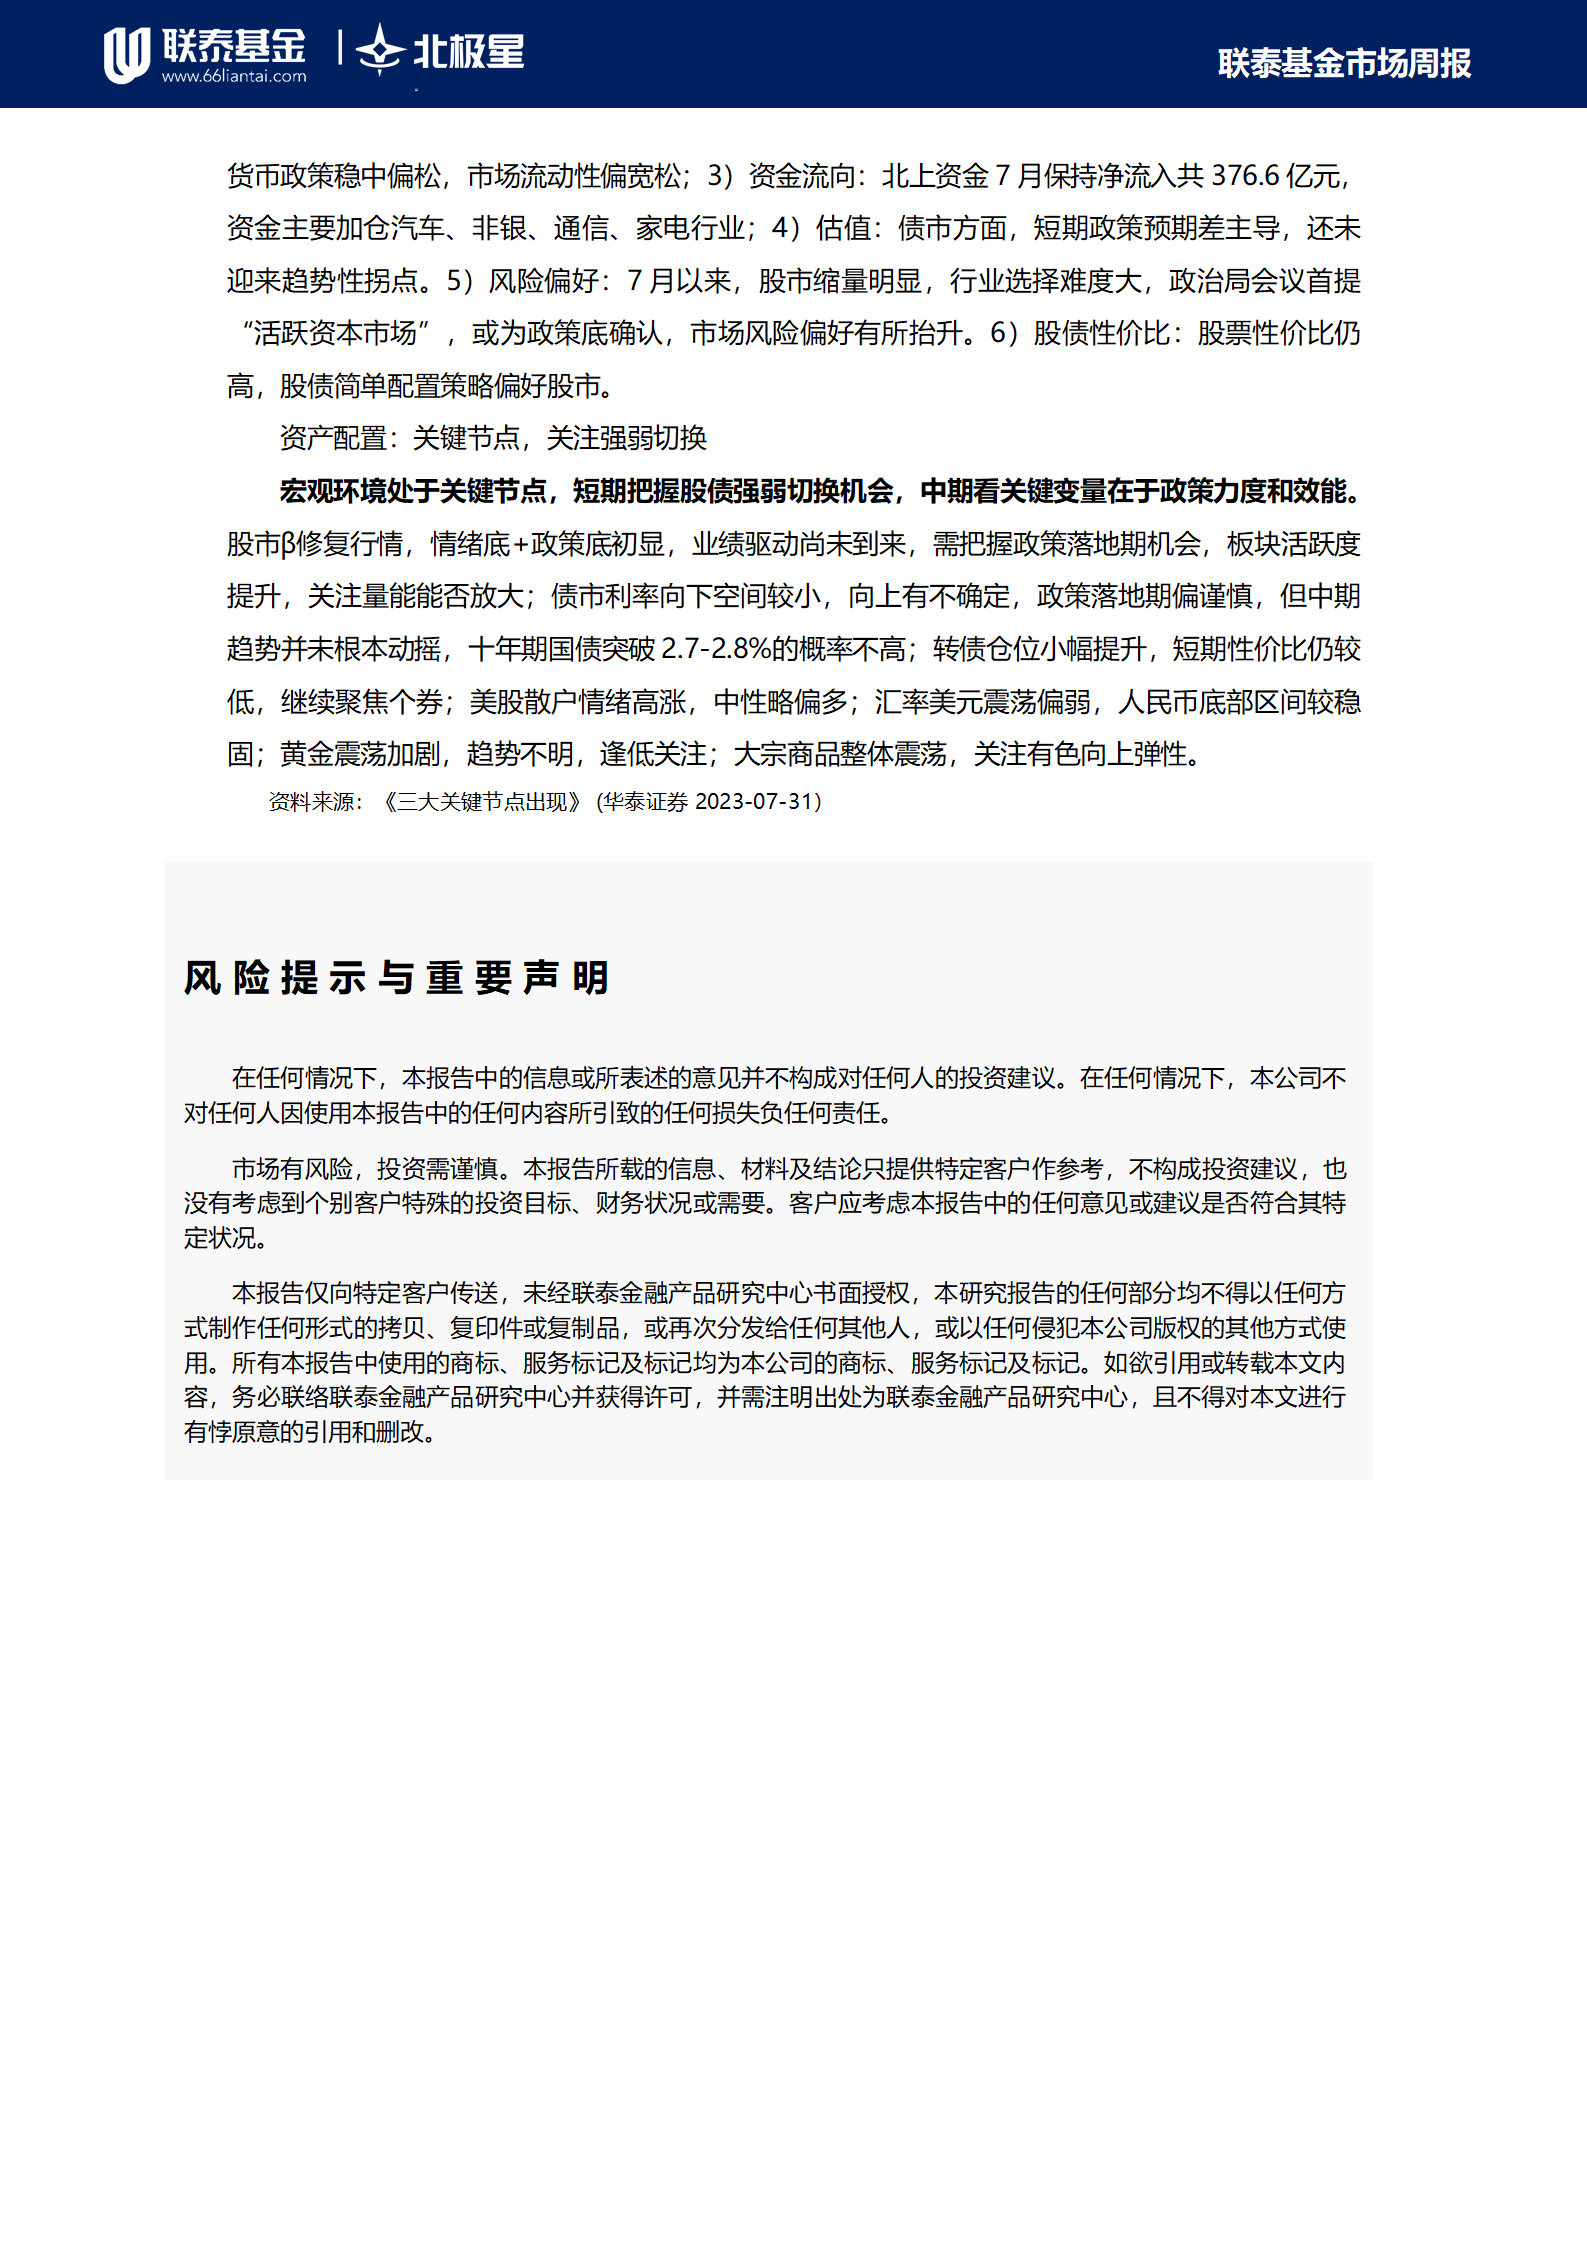 新華財經-聯泰基金市場周報20230806(1)_08